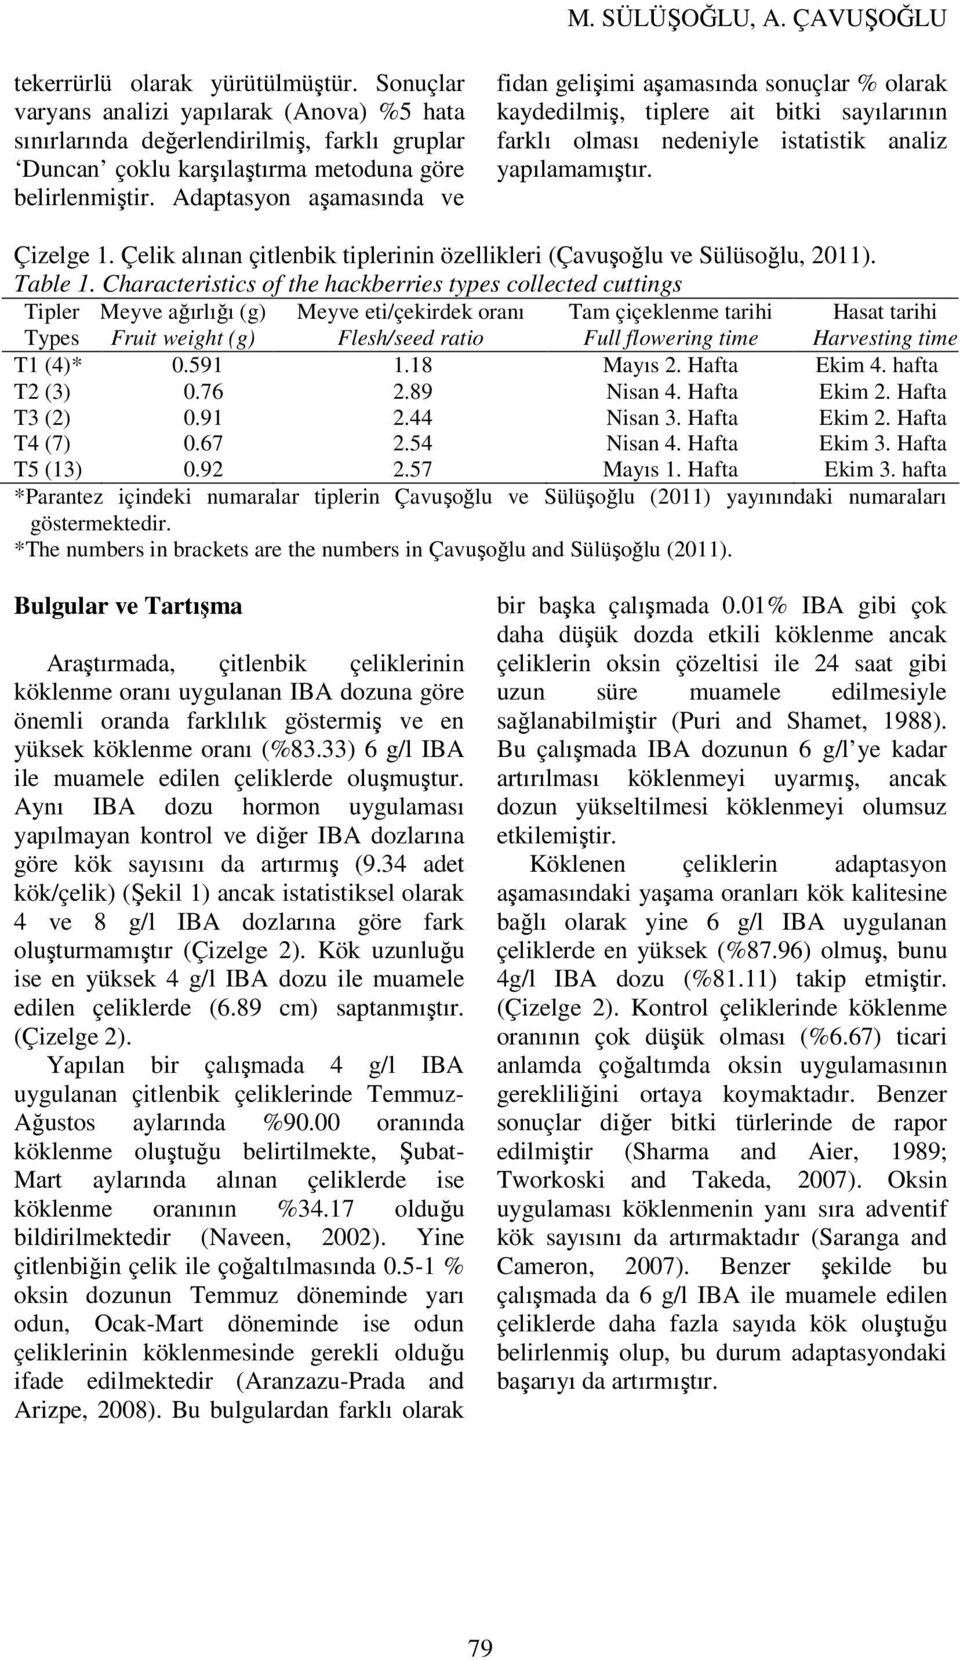 Çelik alınan çitlenbik tiplerinin özellikleri (Çavuşoğlu ve Sülüsoğlu, 2011). Table 1.